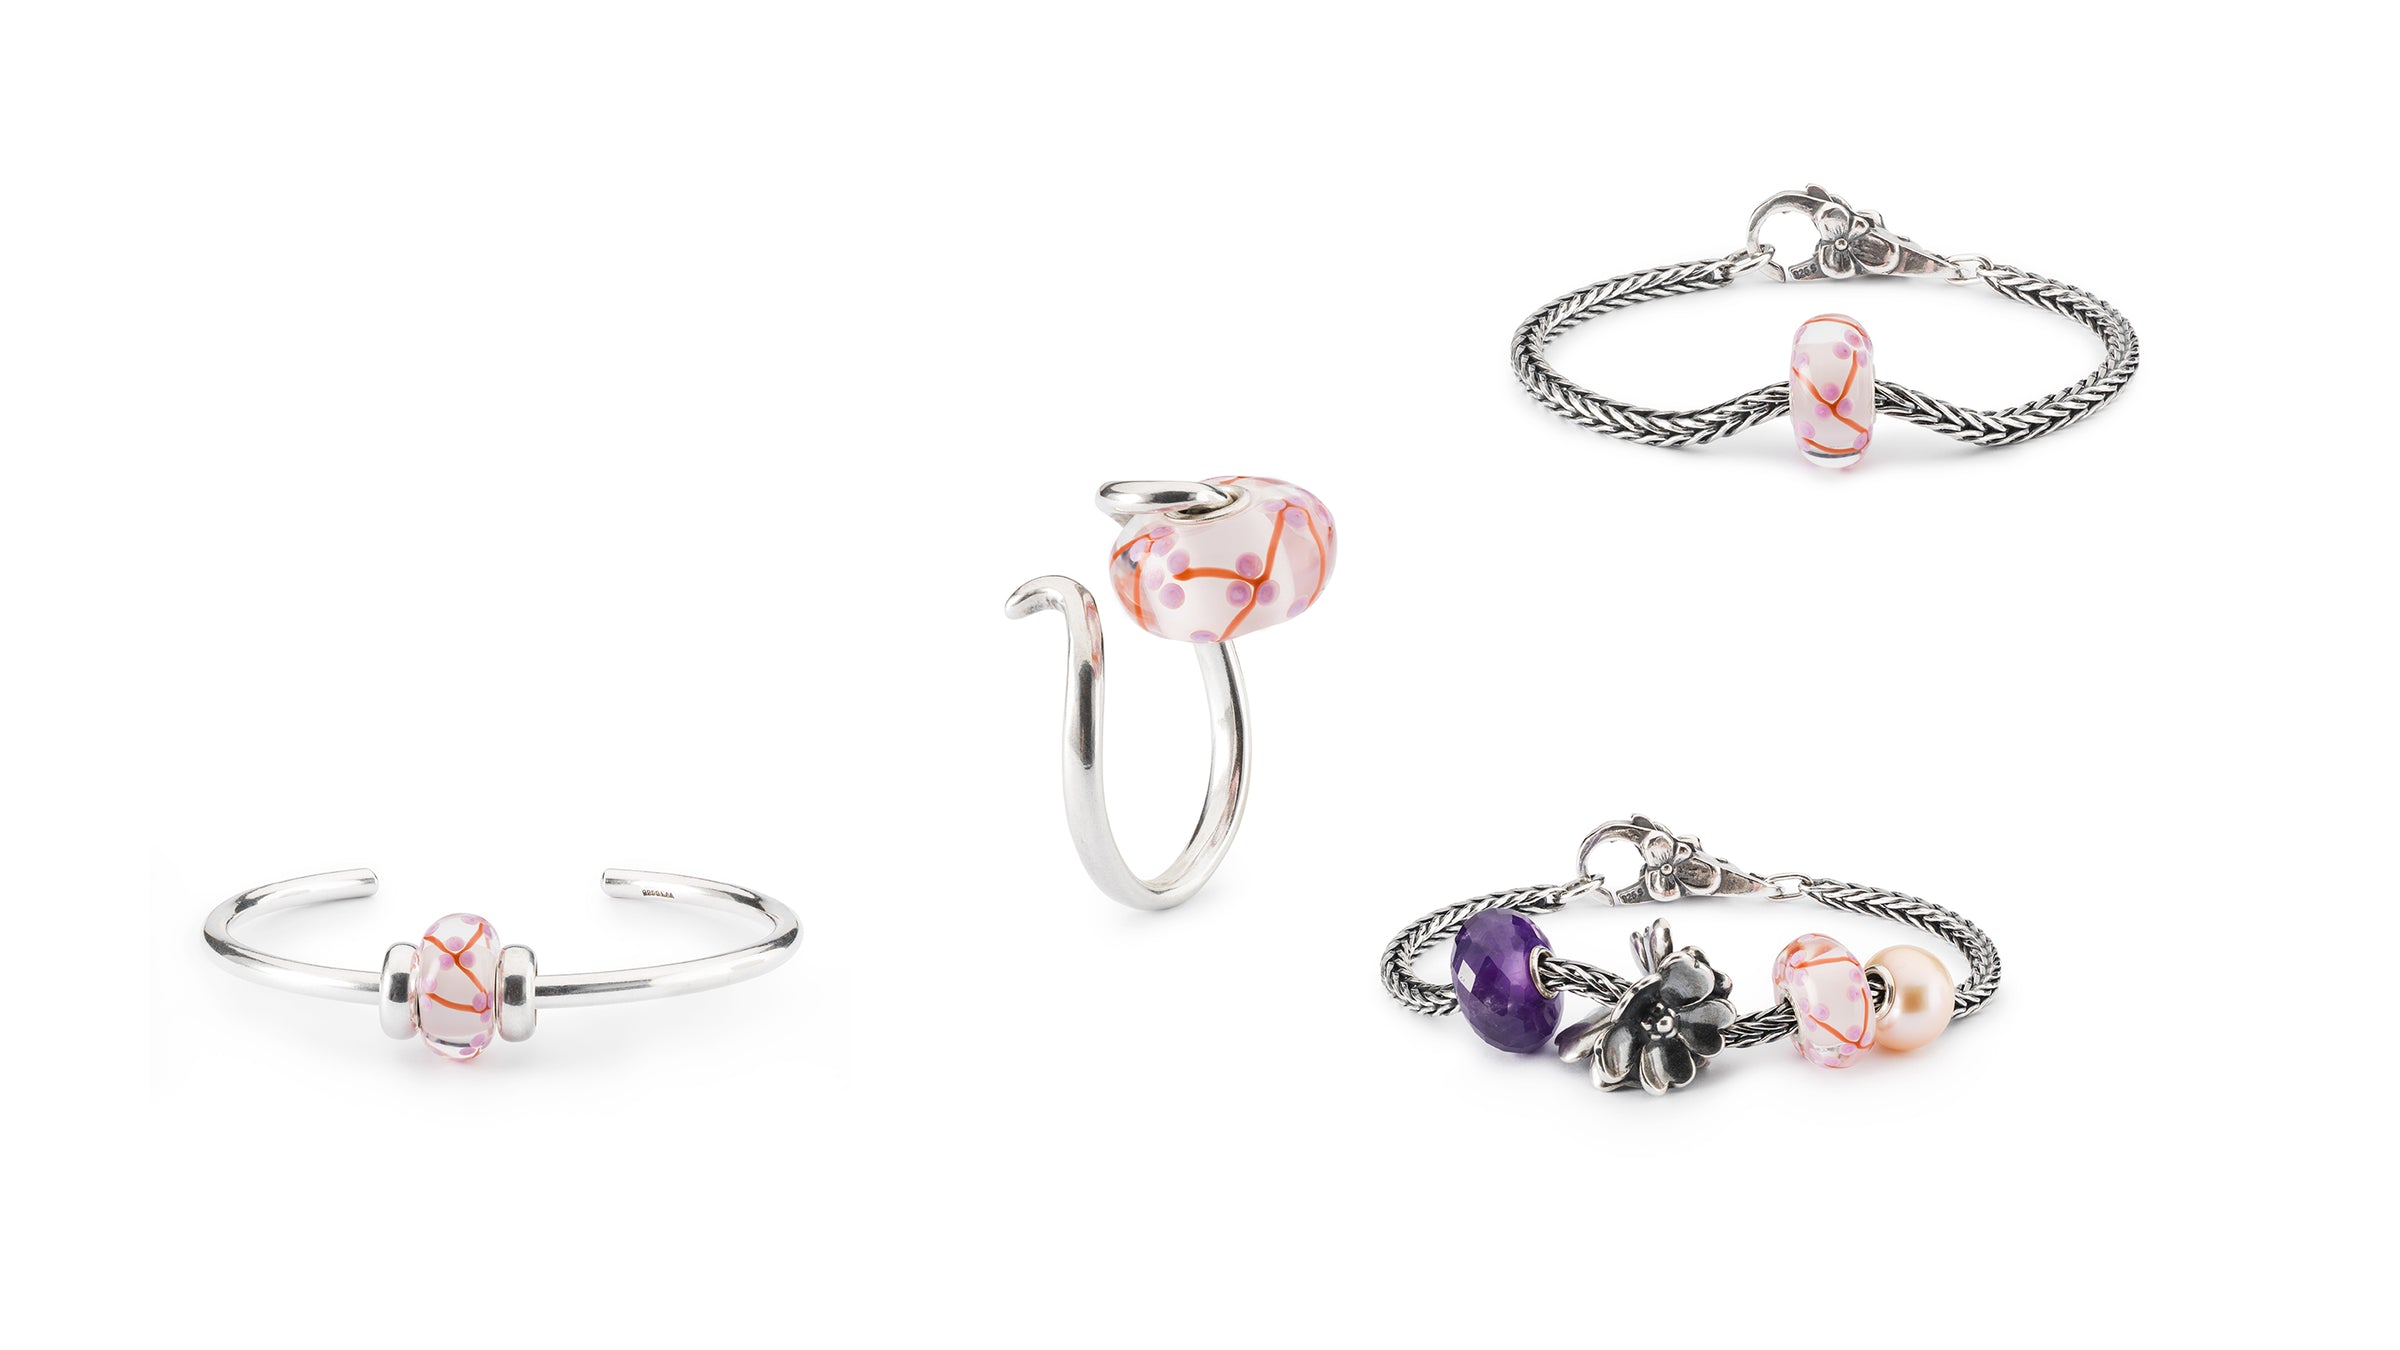 Ferskenblomst kugle i forskelllige smykkekombinationer; armring, ring, simplet rævehalearmbånd and en lækker kombination med amatyst, æbleblomst kuglen, og rosa perle med en blomsterlås